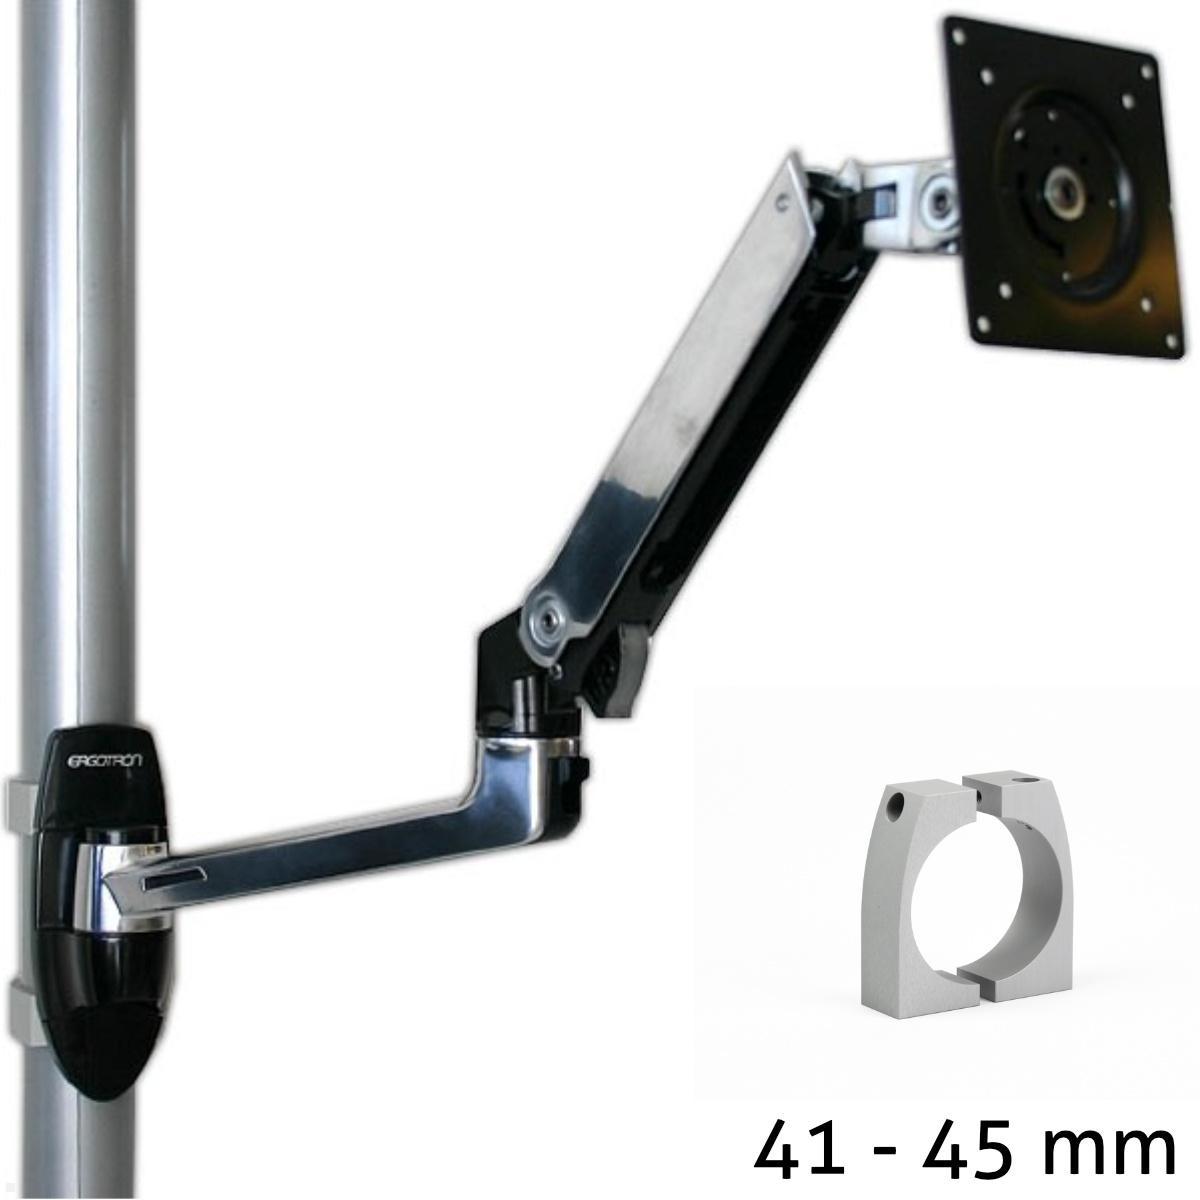 Ergotron LX Arm Monitorhalterung f?r Rohre / S?ulen 41-45 mm, silber von Ergotron